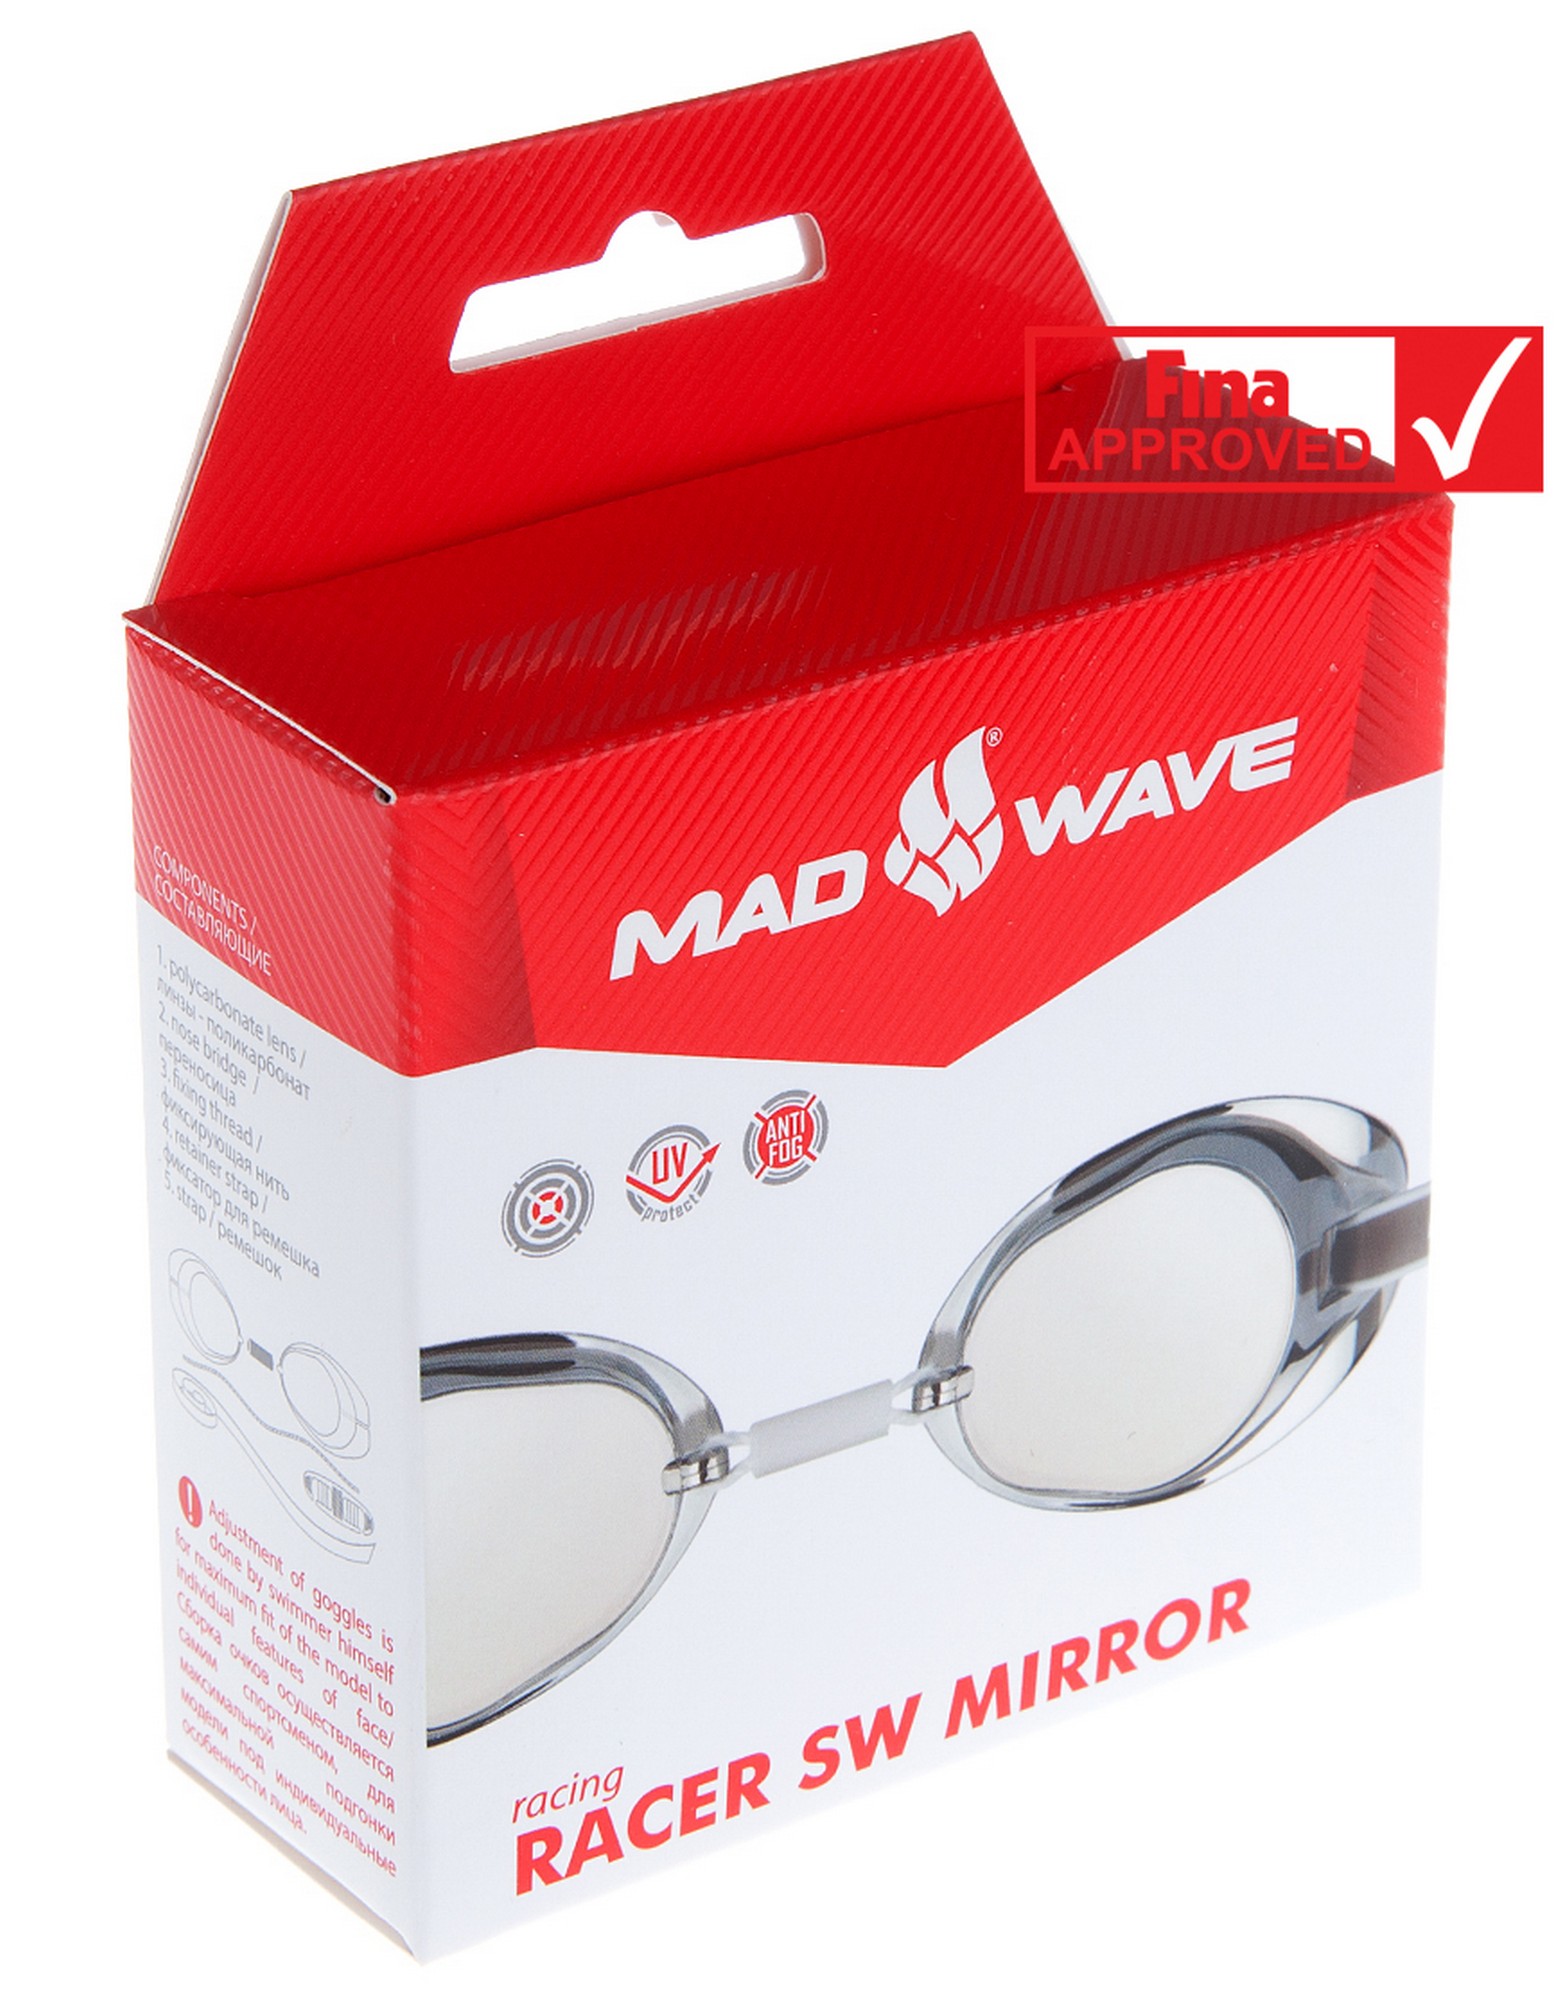 Стартовые очки Mad Wave Racer SW Mirror M0455 02 0 03W голубой 1561_2000